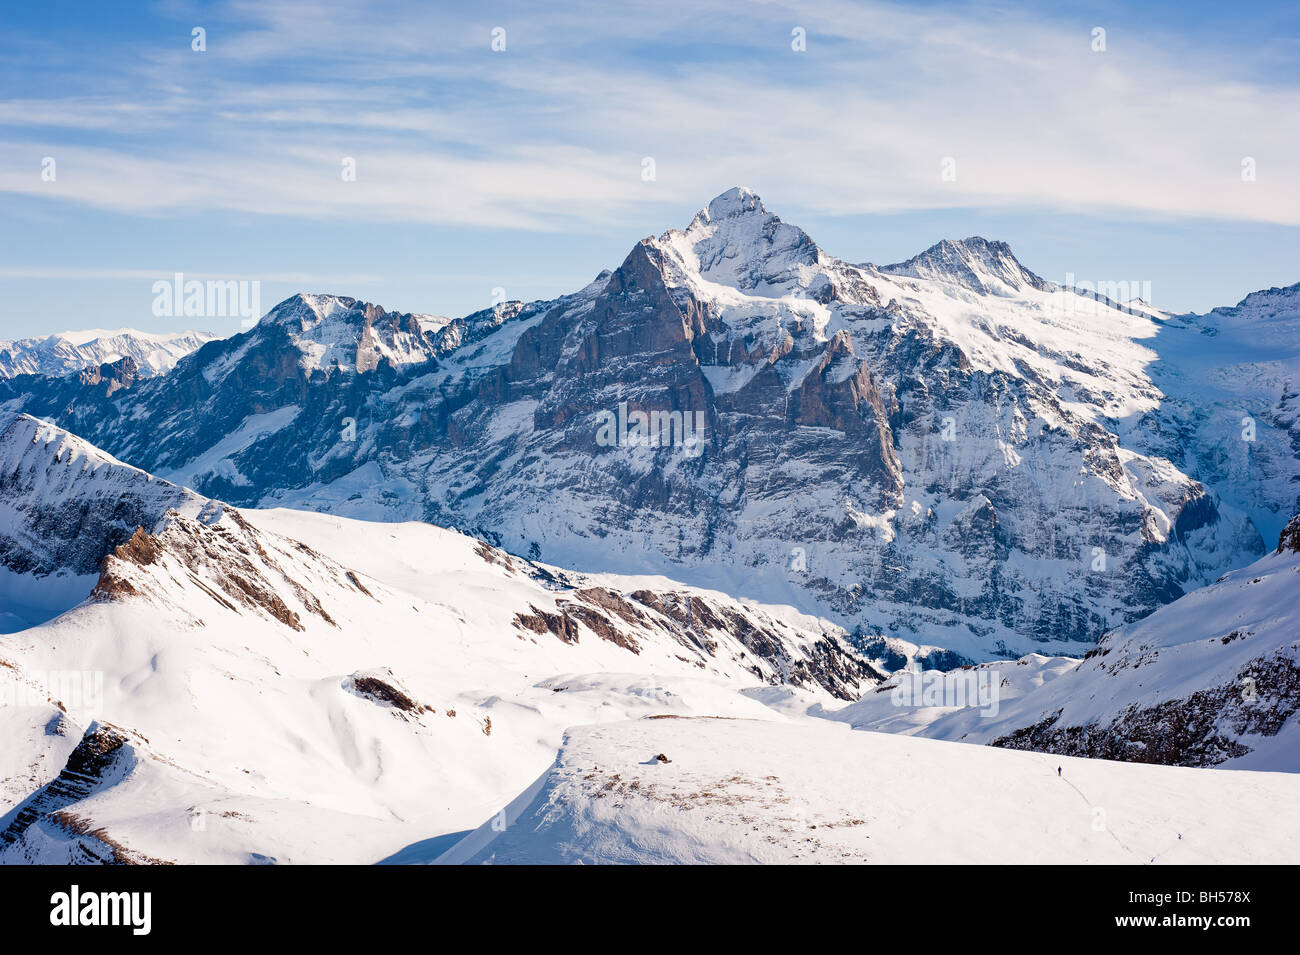 Wetterhorn (3692m) pic de montagne, vue du Faulhorn, Grindelwald, Suisse Banque D'Images